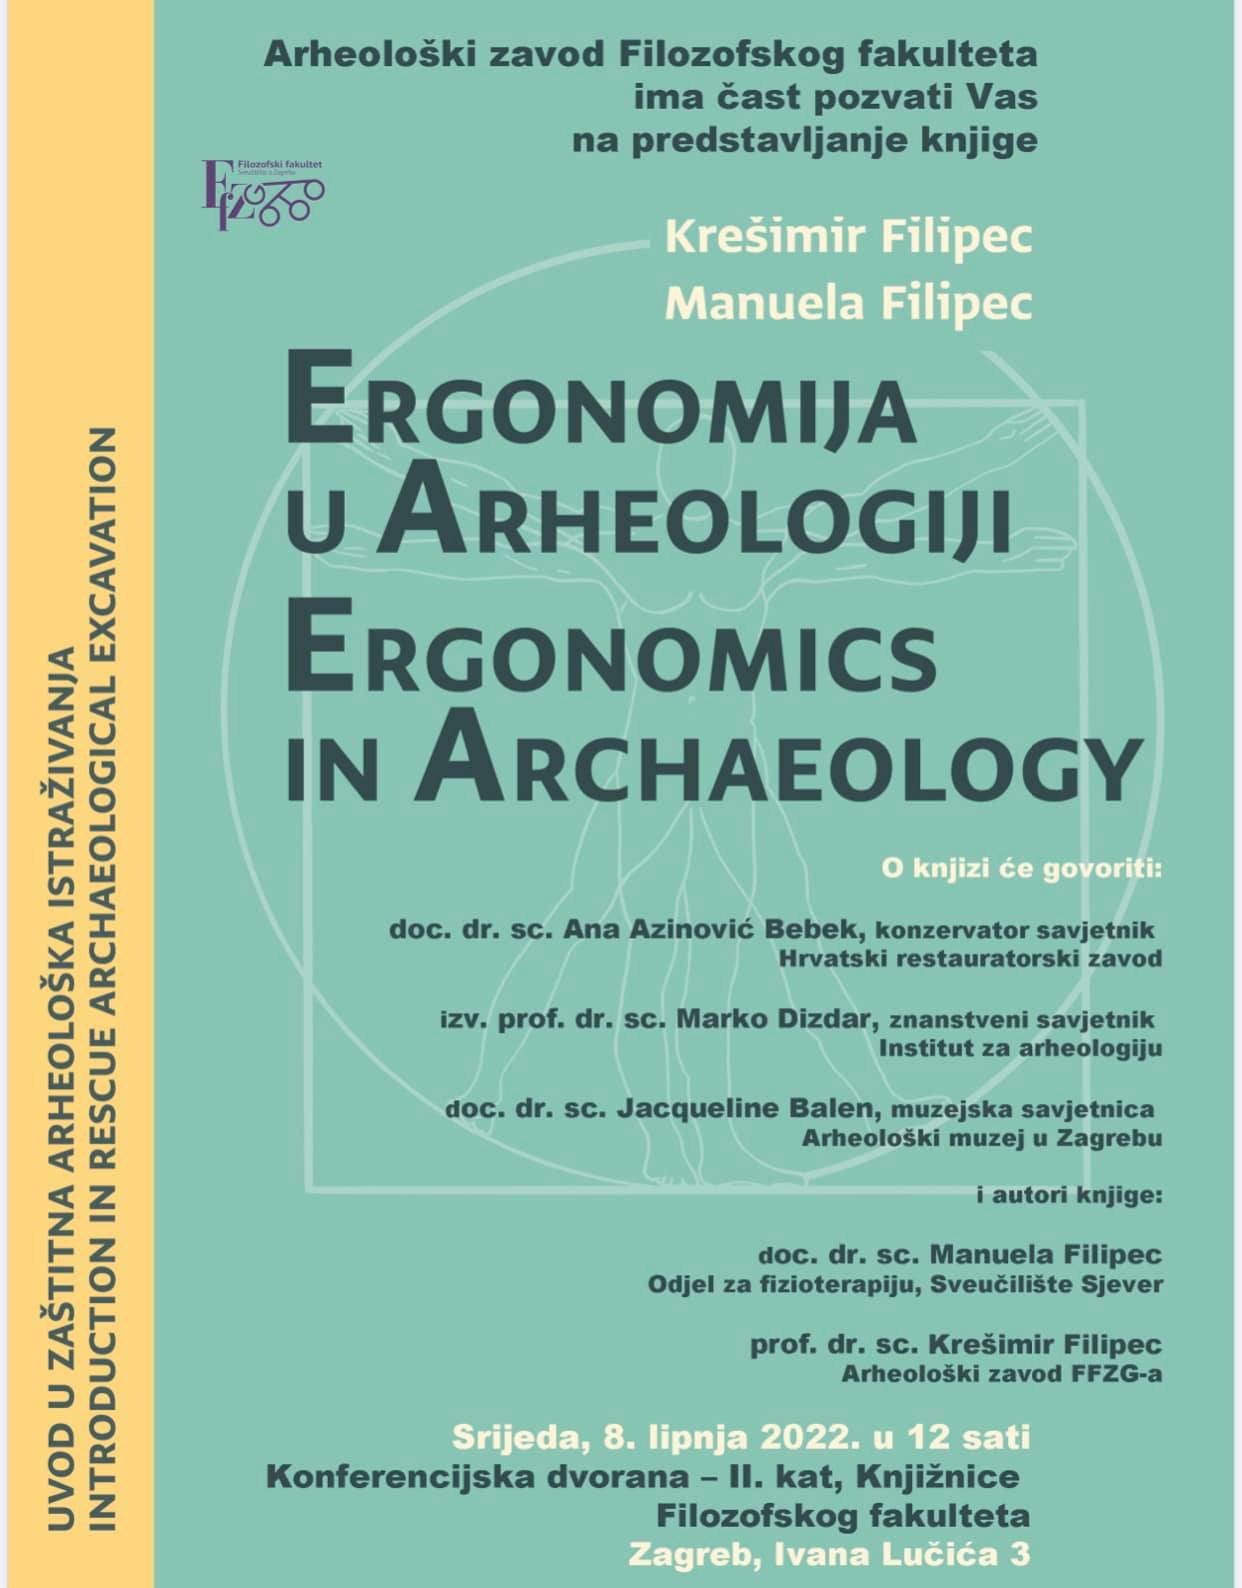 Predstavljanje knjige “Ergonomija u arheologiji”